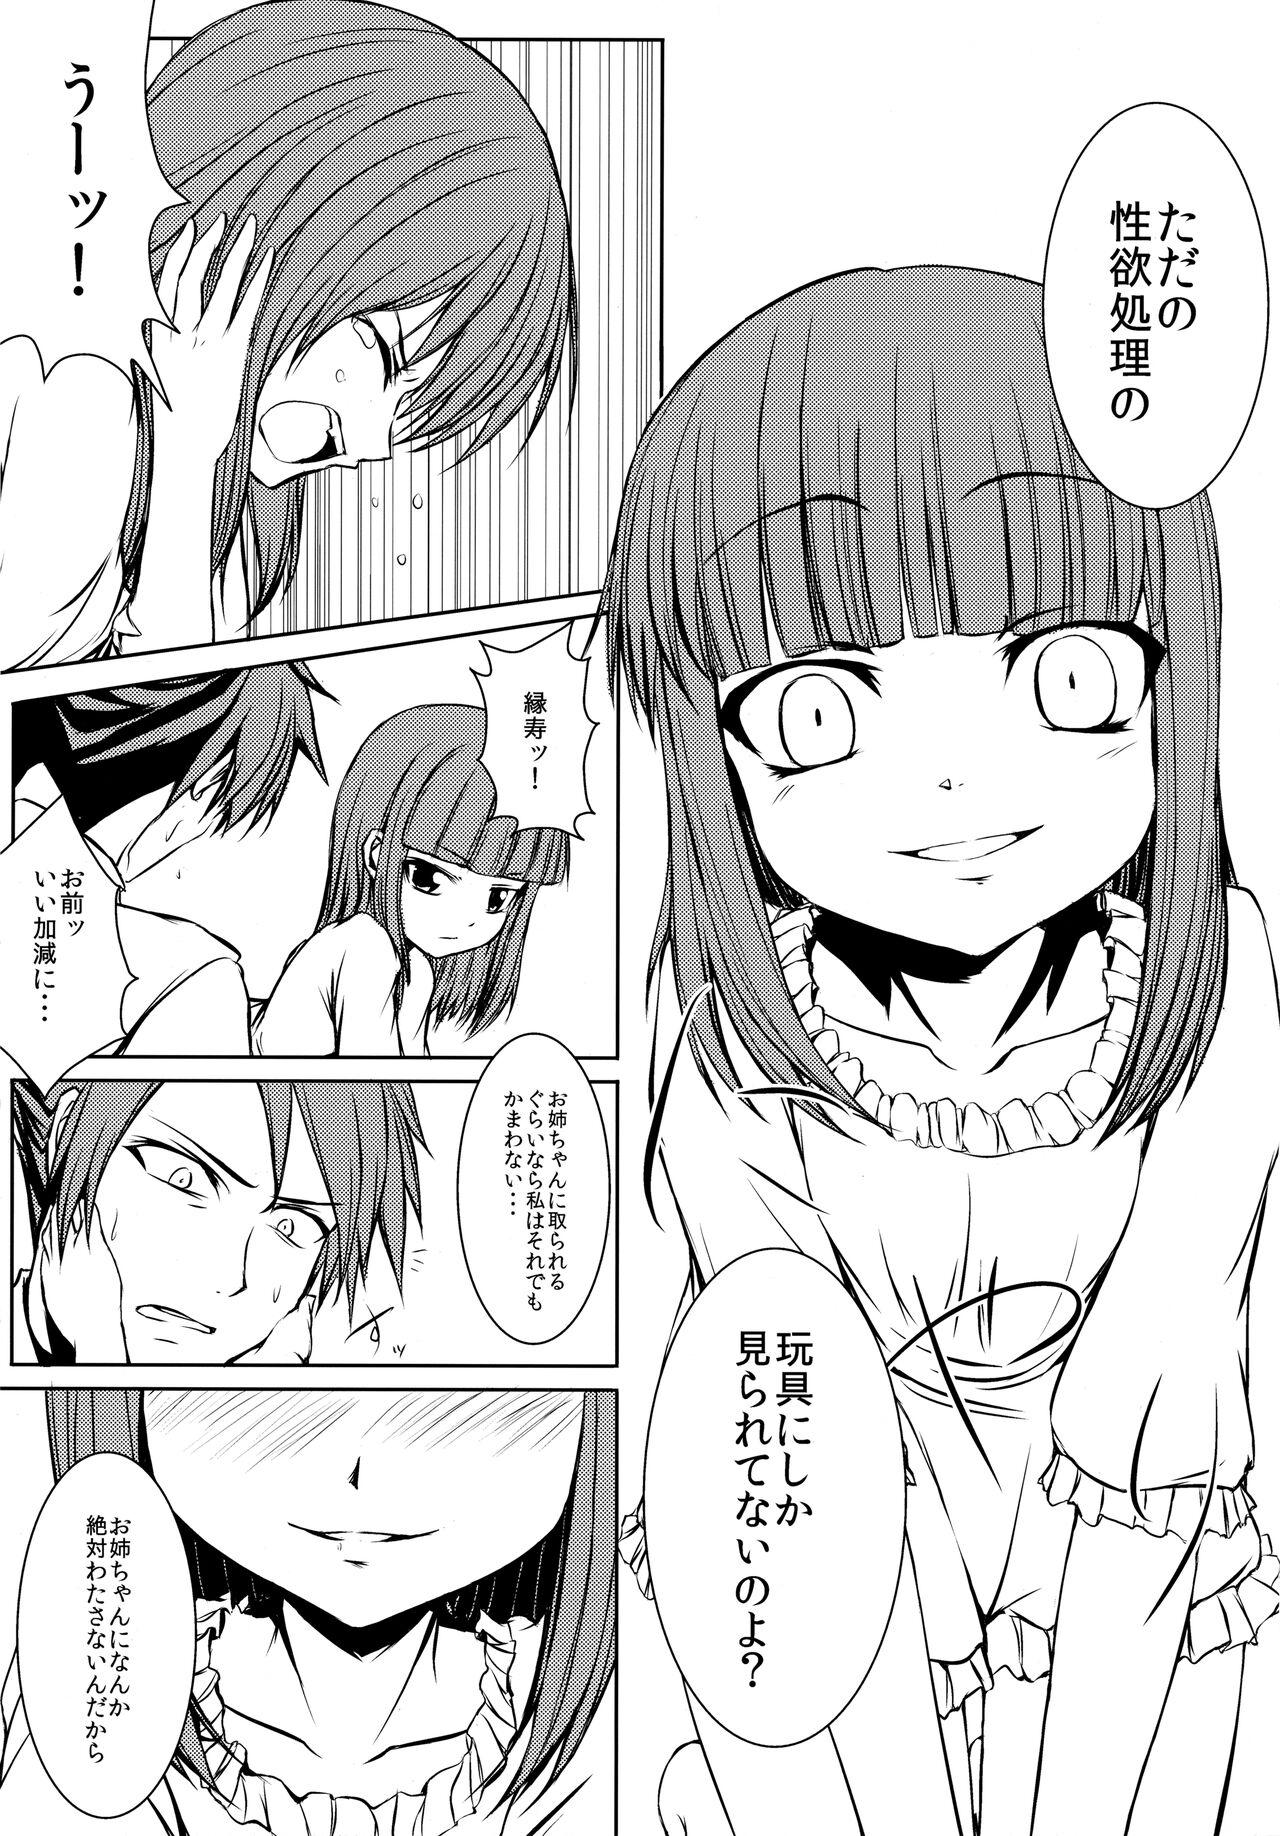 Insane Porn Iedenako 5 - Umineko no naku koro ni | when the seagulls cry Close Up - Page 5